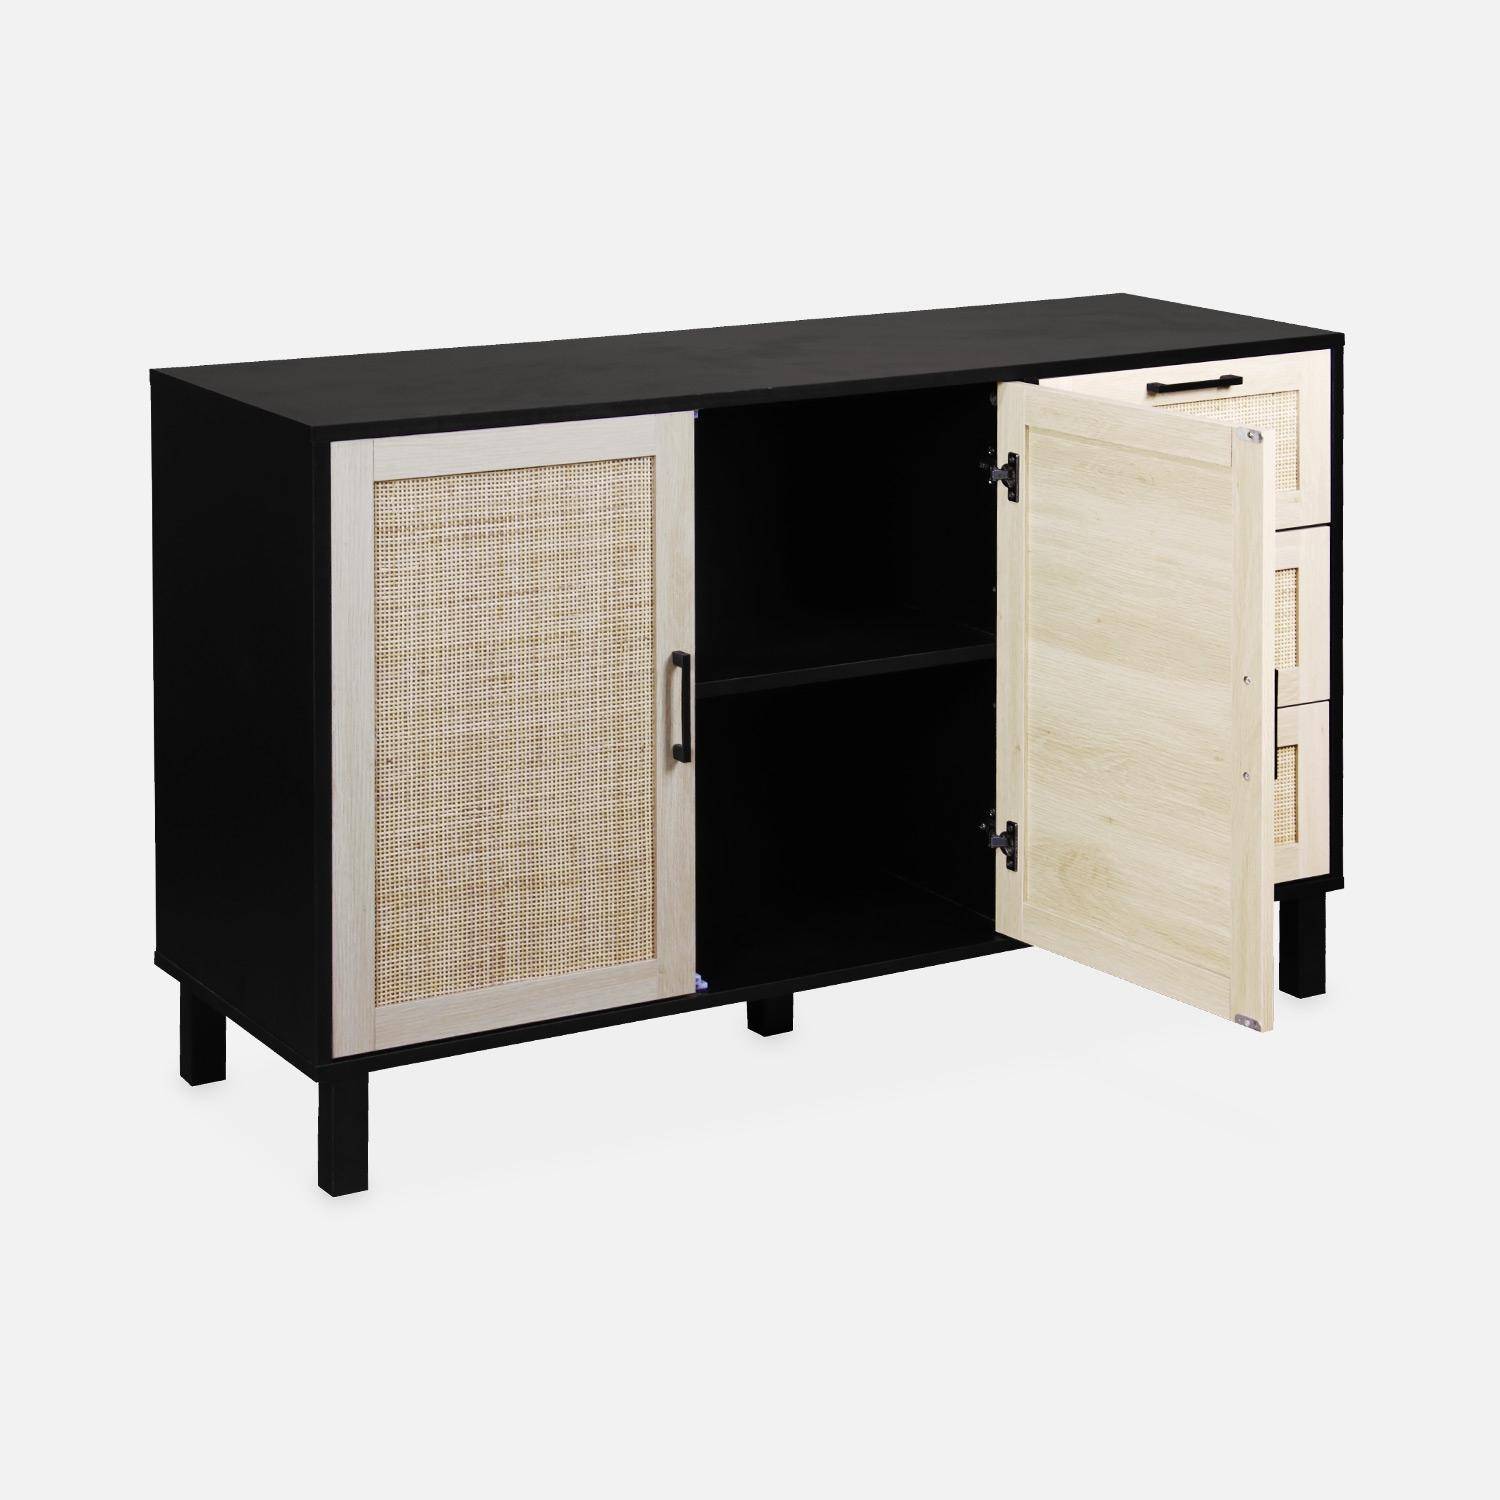 Black and cane sideboard 120 x 40 x 75cm - Bianca - 3 drawers, 2 doors, 2 levels, 1 shelf,sweeek,Photo6